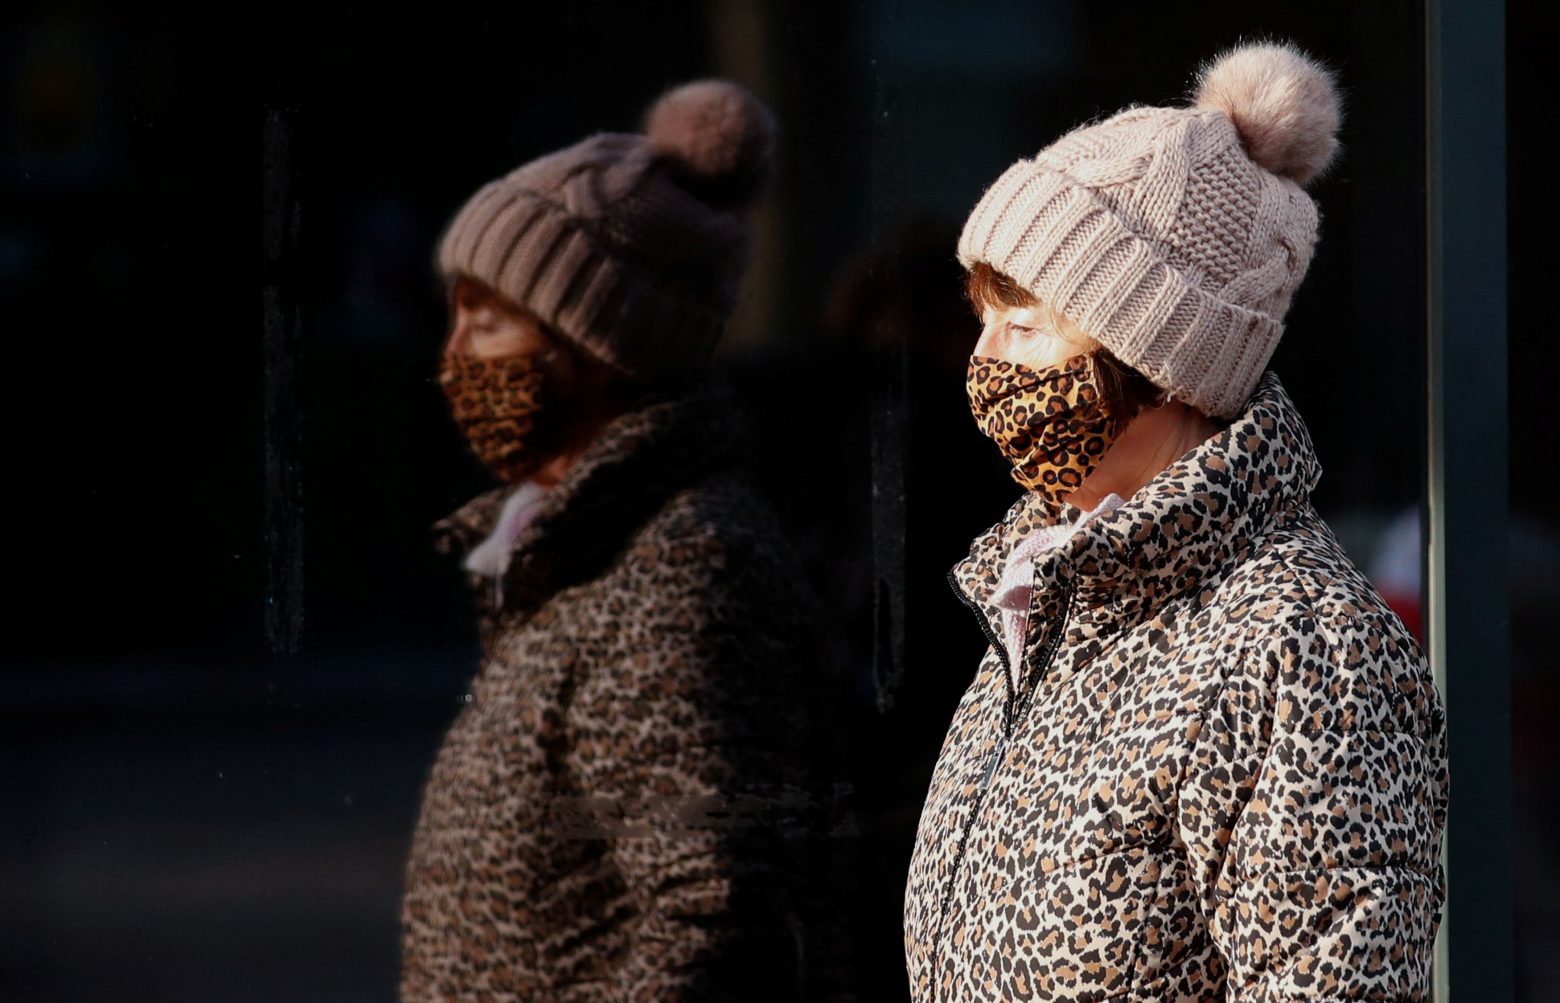 Κοροναϊός - Σε πόση ώρα κολλάς αν φοράς ή δεν φοράς μάσκα